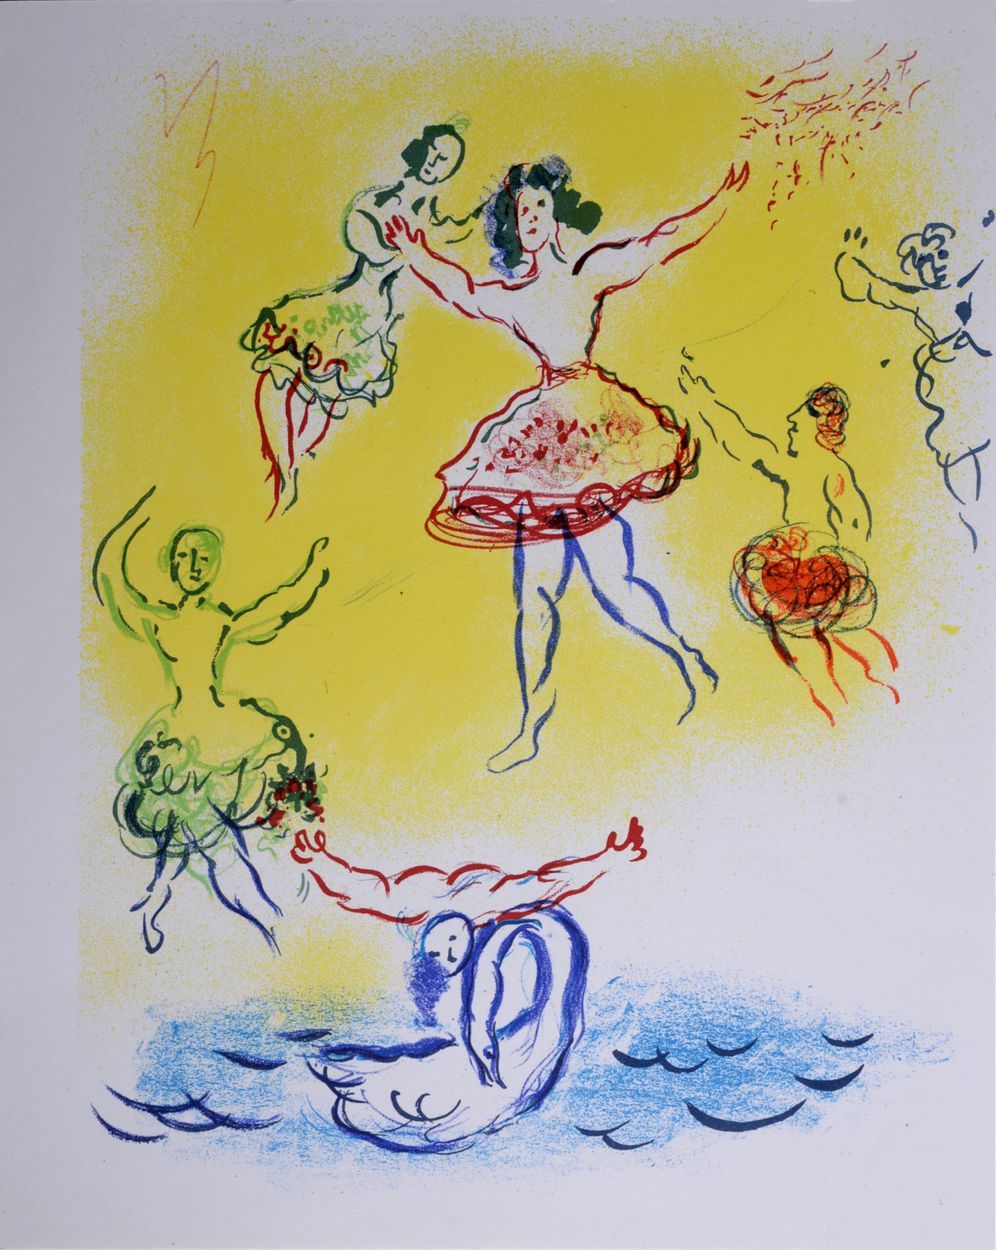 Marc Chagall 马克-夏加尔 (1887-1985)

天鹅湖》草图，约1965年

纬线纸上的石版画。马克-夏加尔（Marc Chagall）的加尼&hellip;